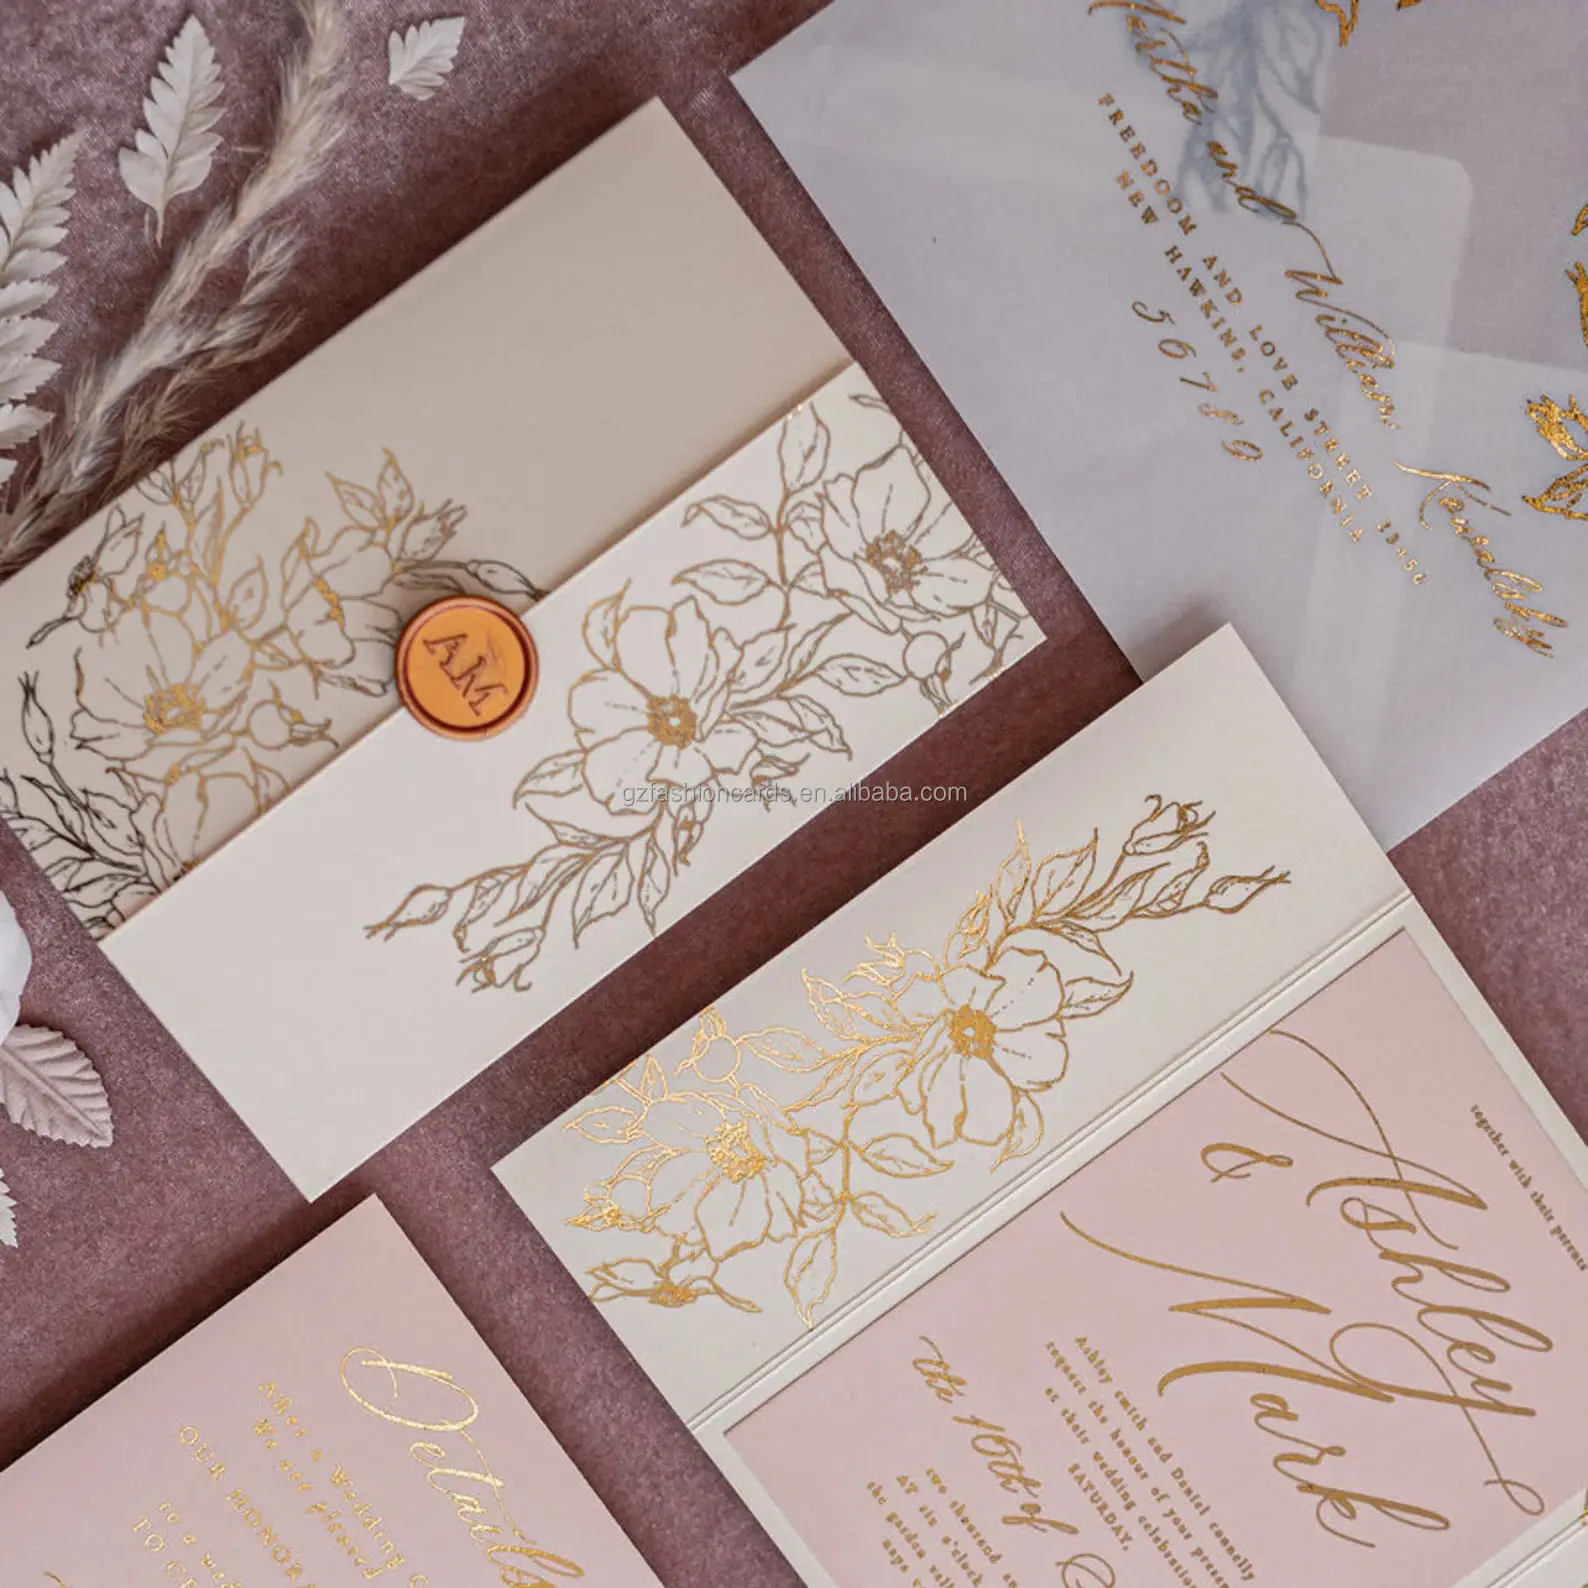 Inviti di carta dal Design elegante fatti a mano biglietto d'invito con stampa floreale a colori con carte RSVP in carta da lucido